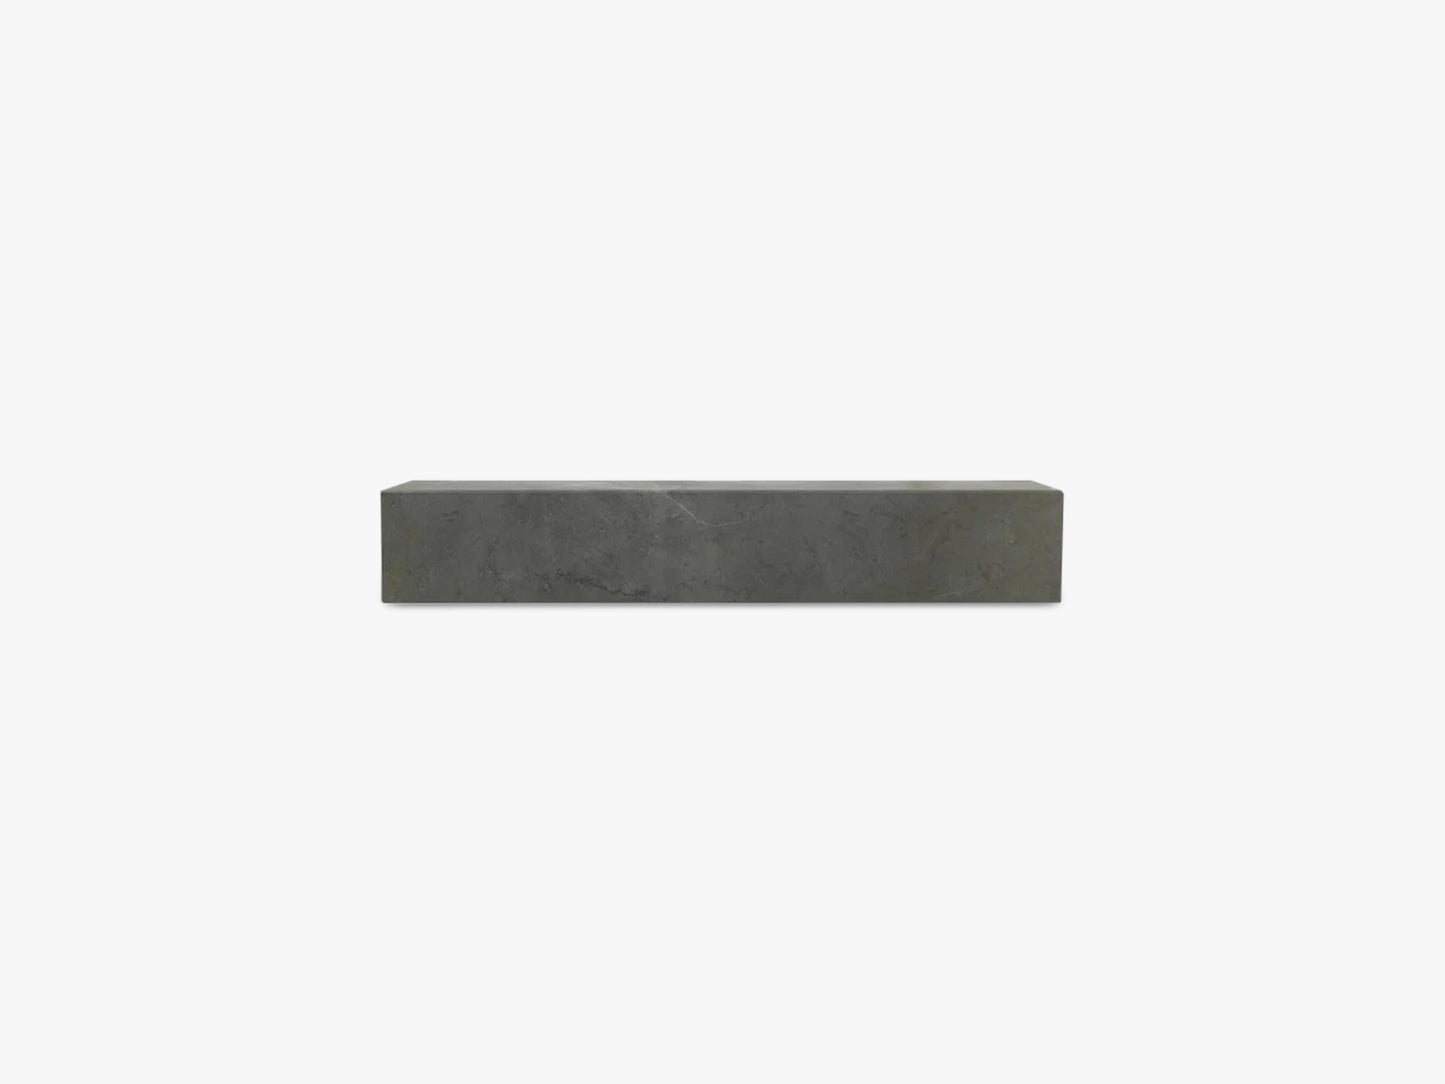 Plinth Shelf, Brown/Grey Kendzo Marble